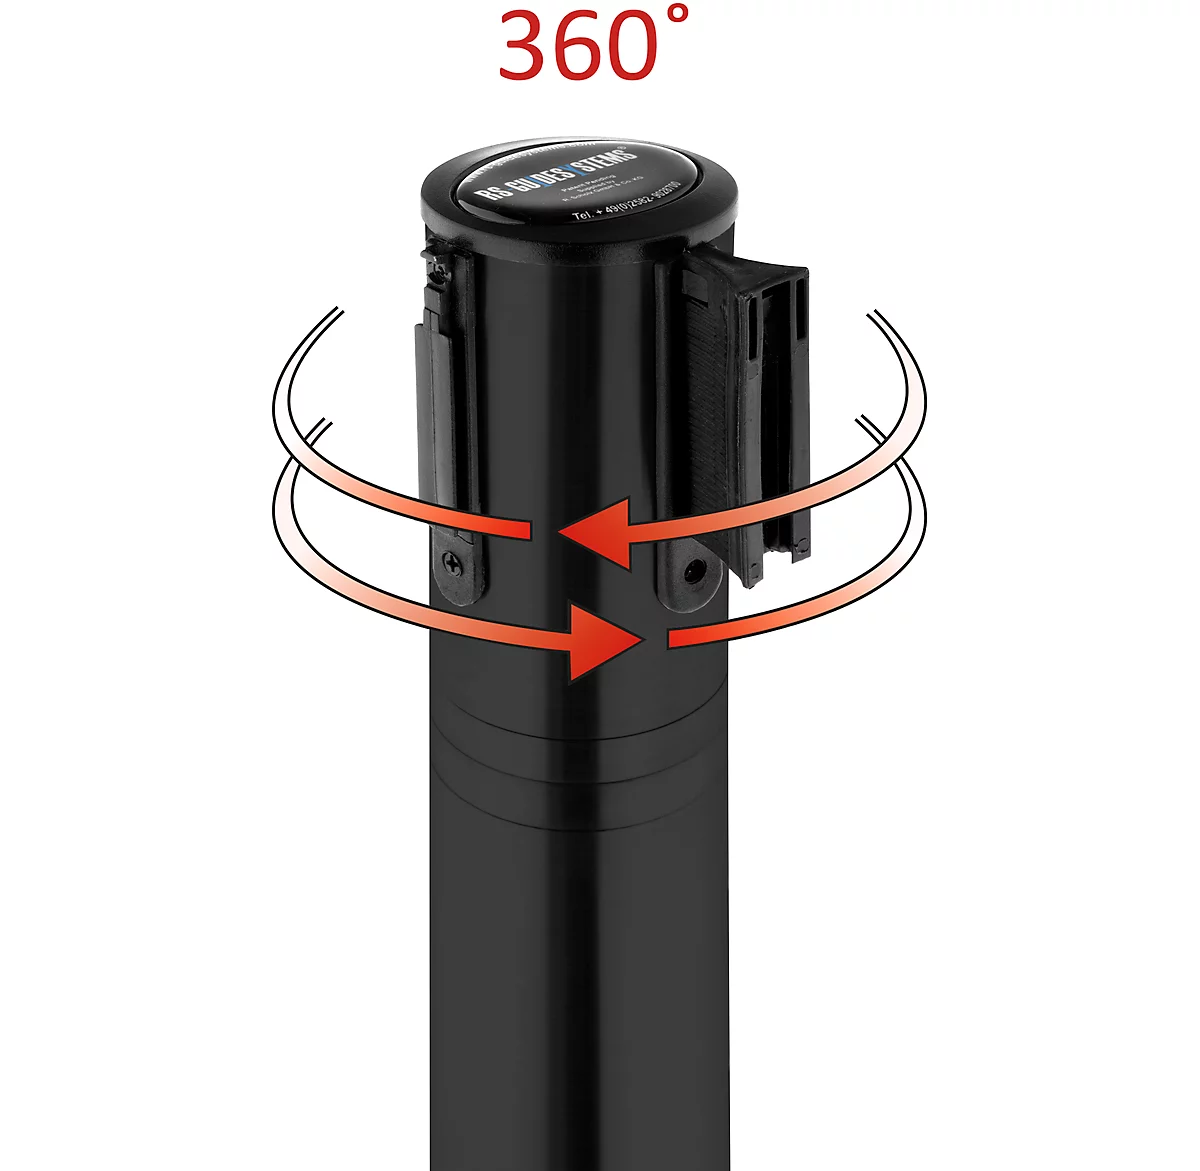 Poste delimitador, cabeza giratoria 360°, cinta extensible hasta 2,3 m, carrete de cinta y bloqueo, L 1000 mm, metal, cinta negro-blanco